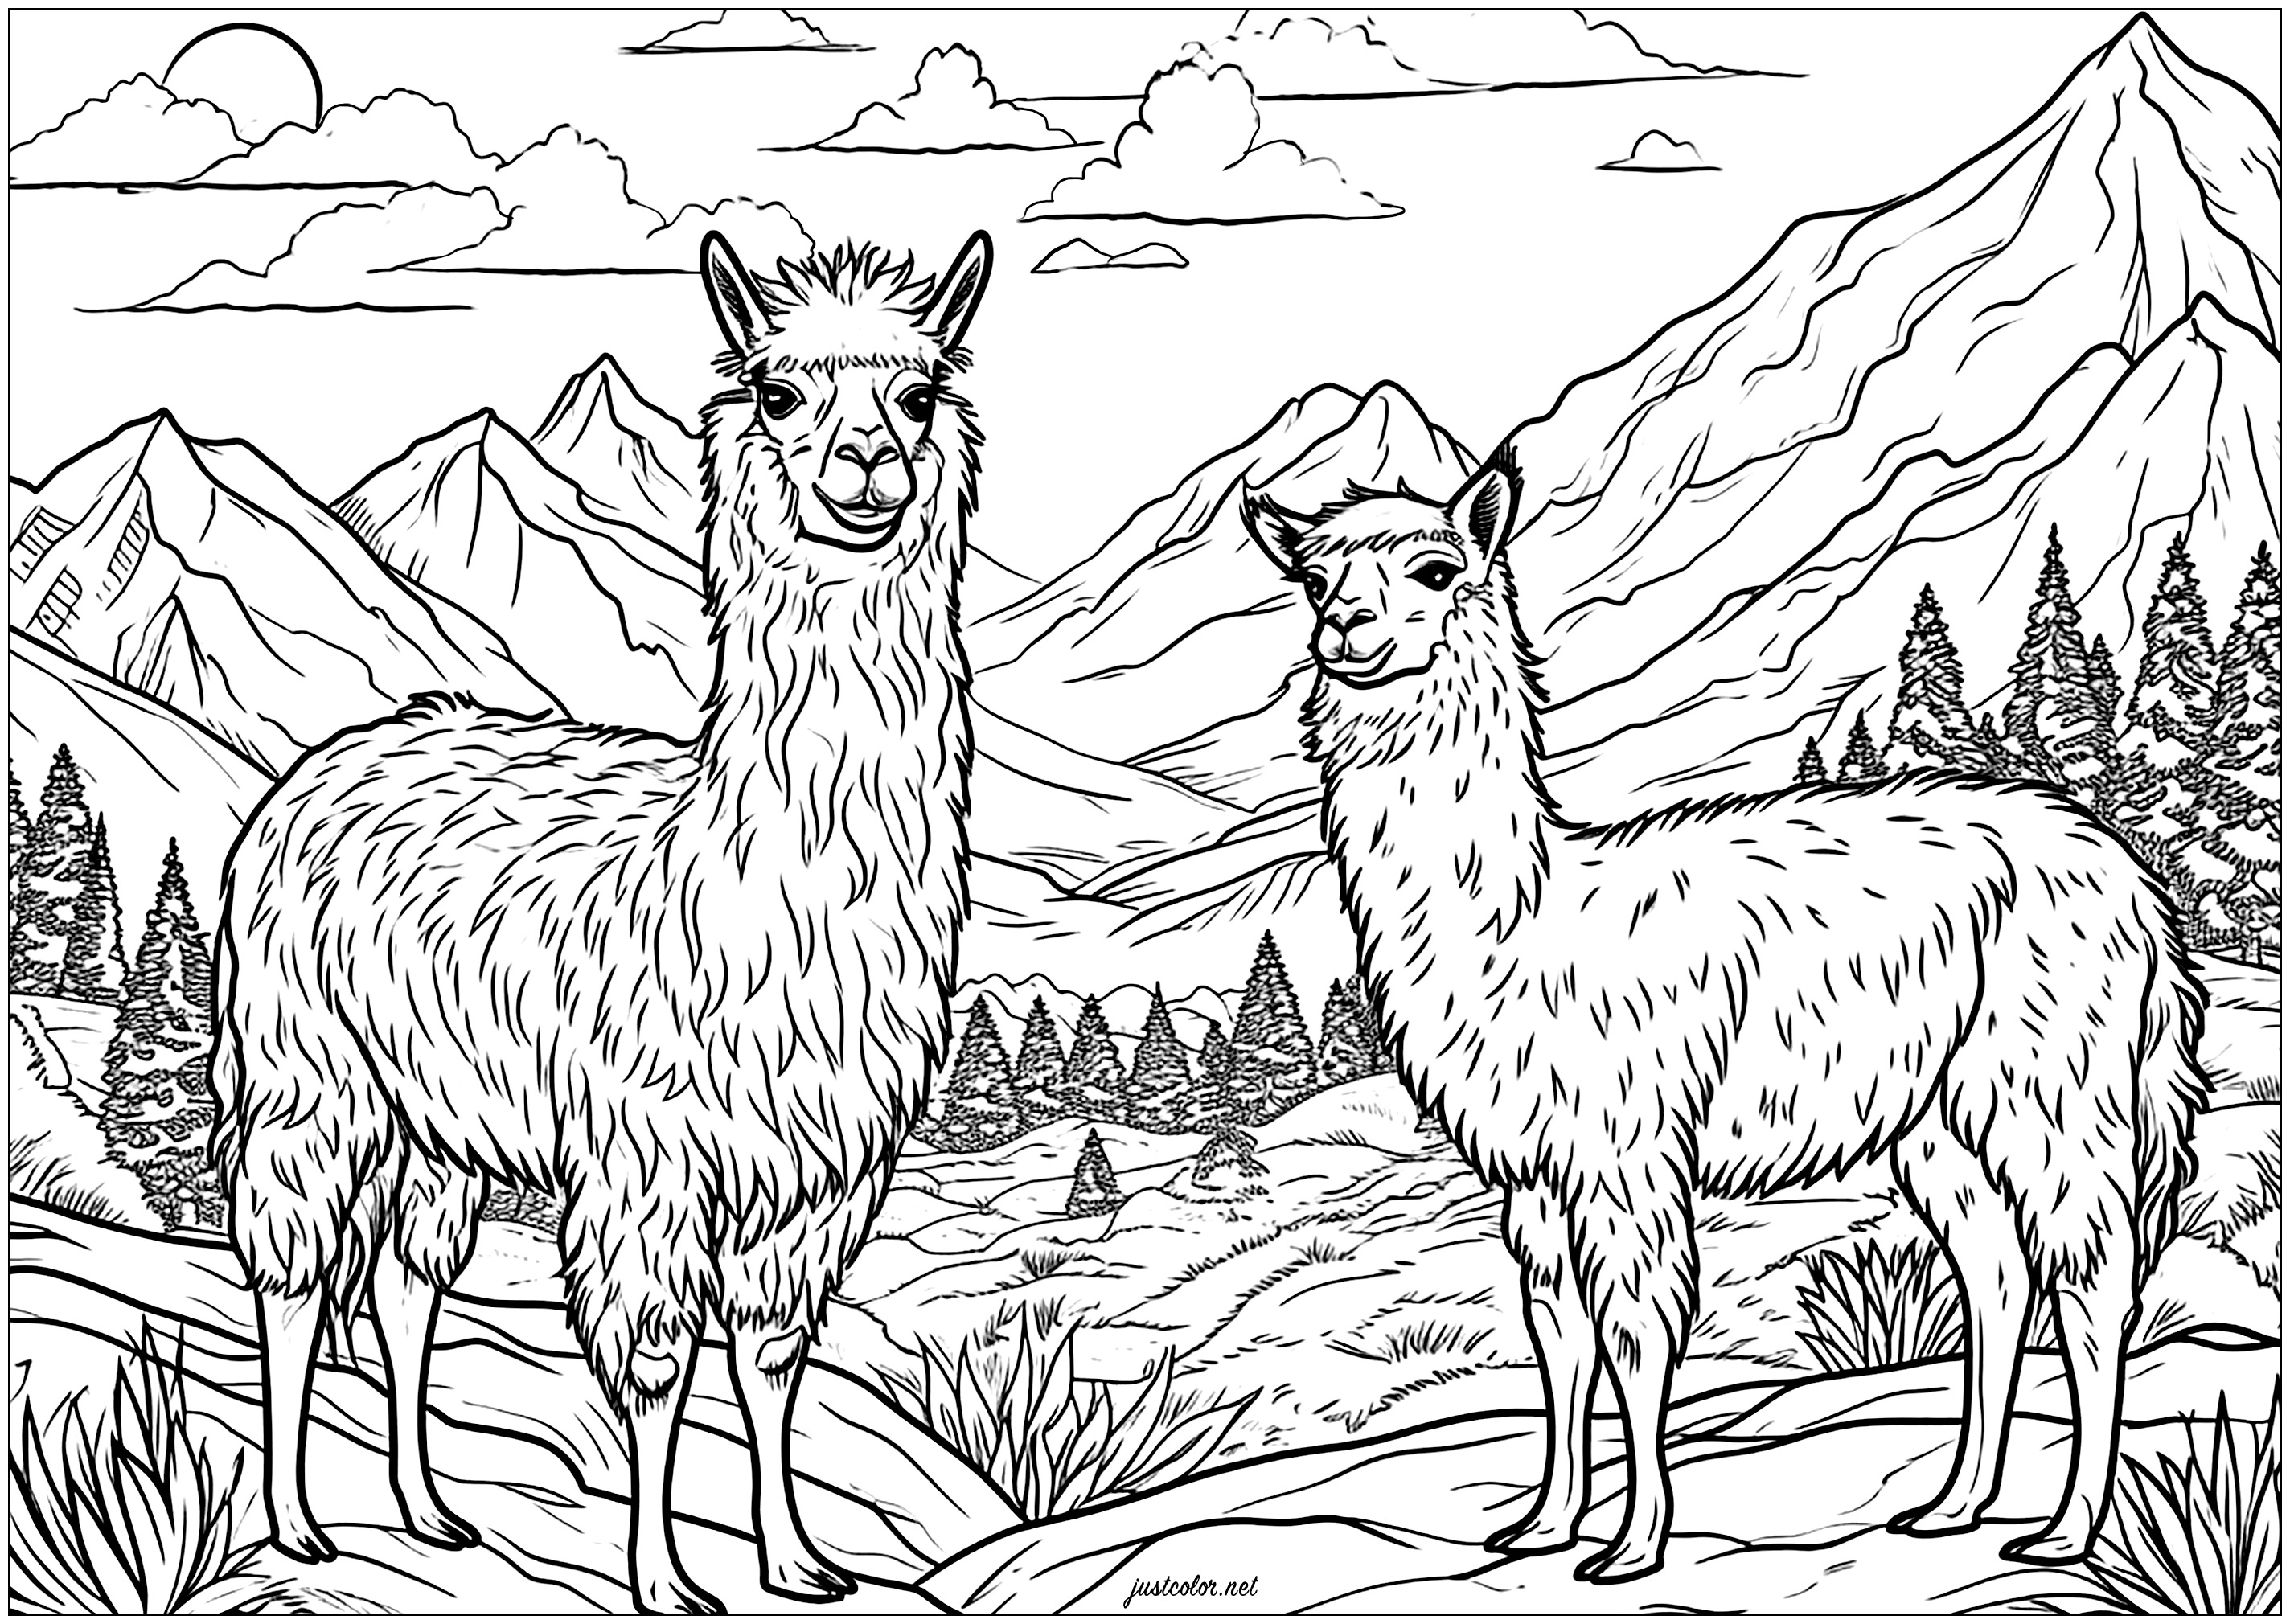 Zwei Lamas in den Bergen, die sehr ernst schauen